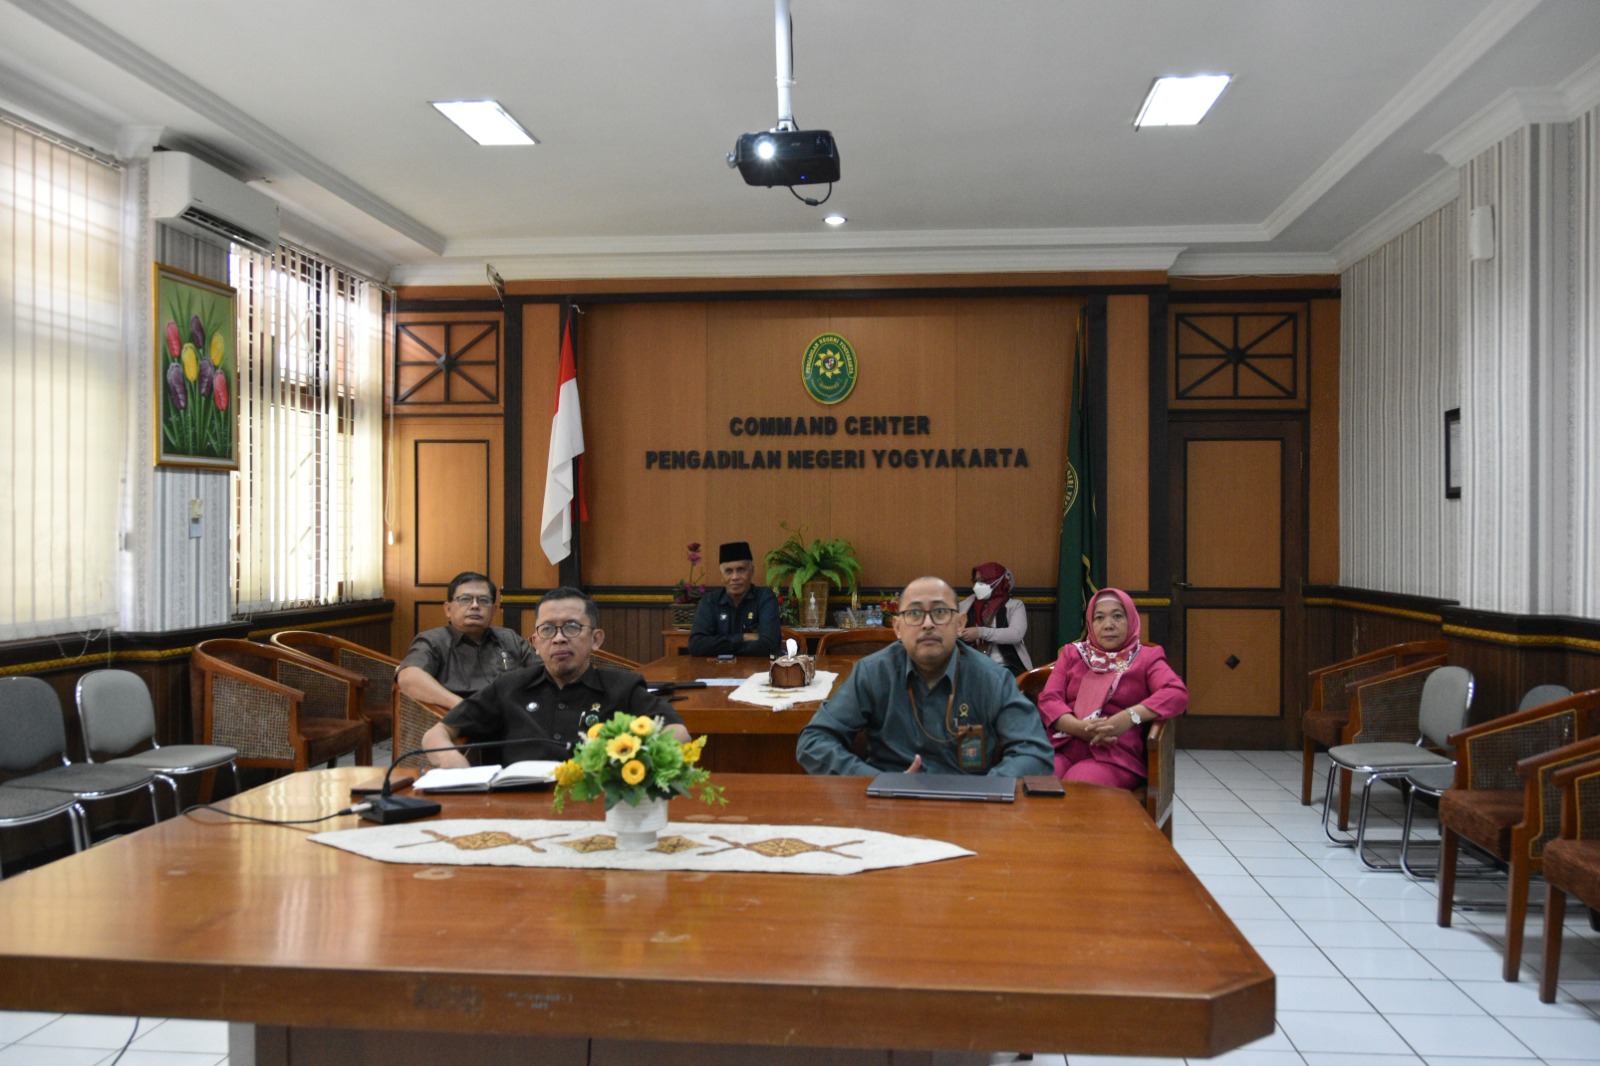 Pengadilan Negeri Yogyakarta Mengikuti Sosialisasi Pembaruan Aplikasi SIPP dan Aplikasi e-Court